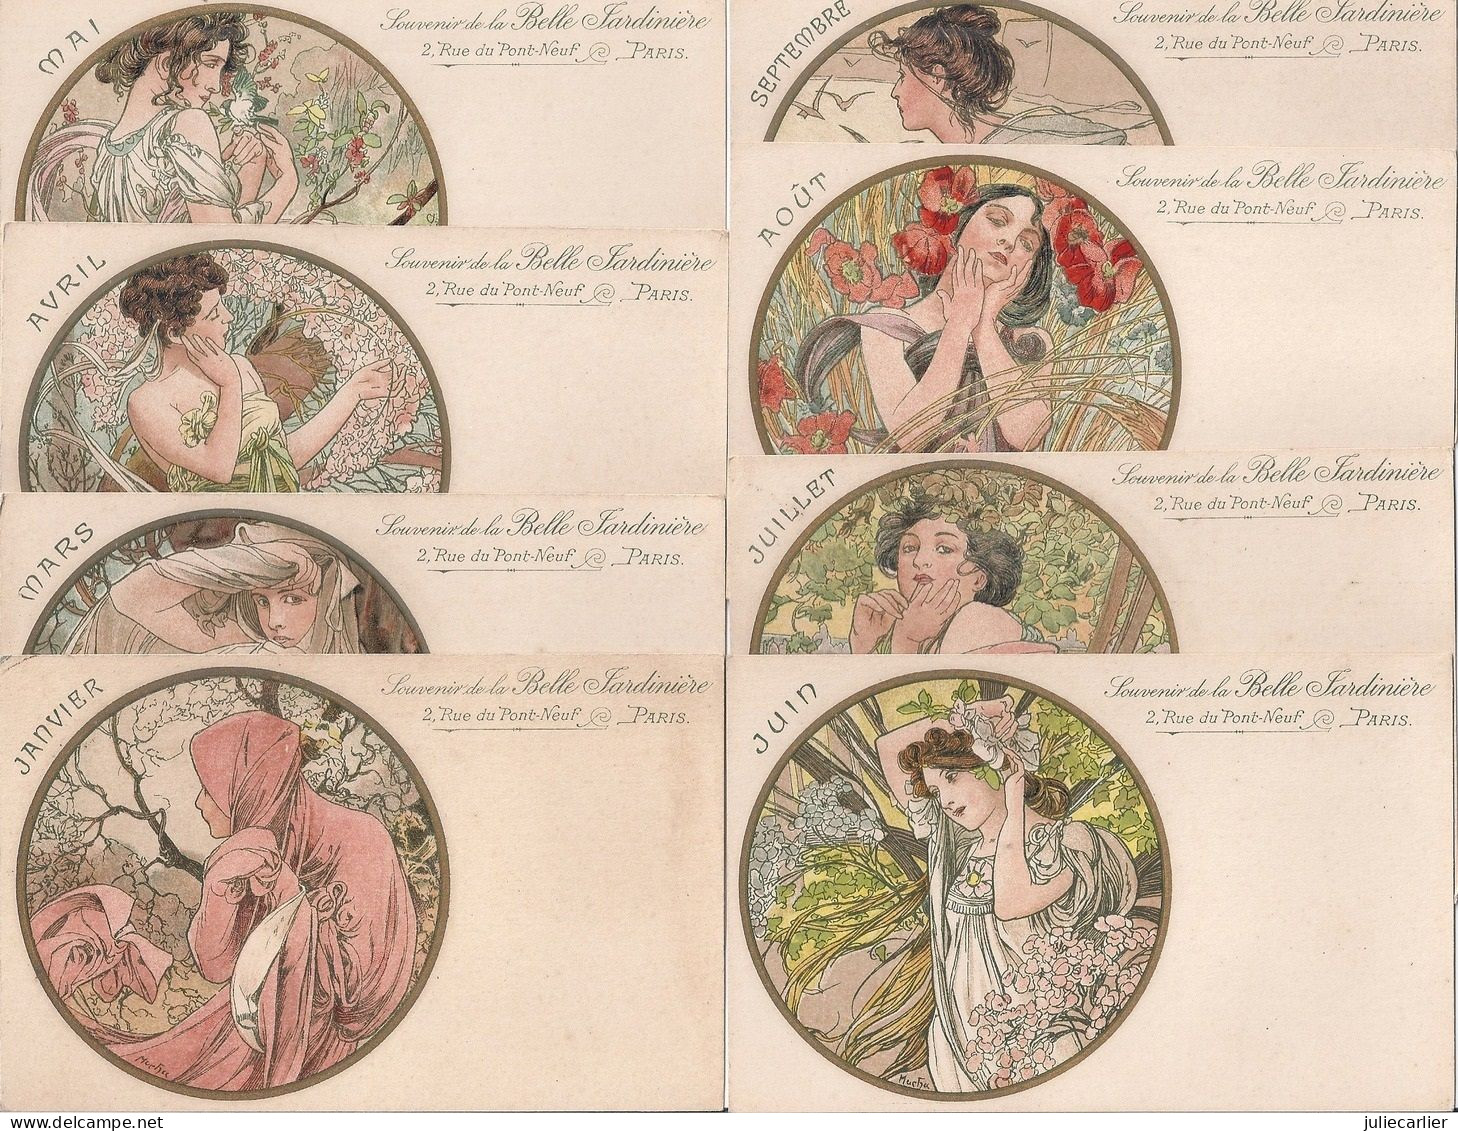 11 CPA Série "Souvenir De La Belle Jardinière" -illustrateur Alphonse Mucha -imp. Champenois, Paris -2, Rue Du Pont-Neuf - Mucha, Alphonse